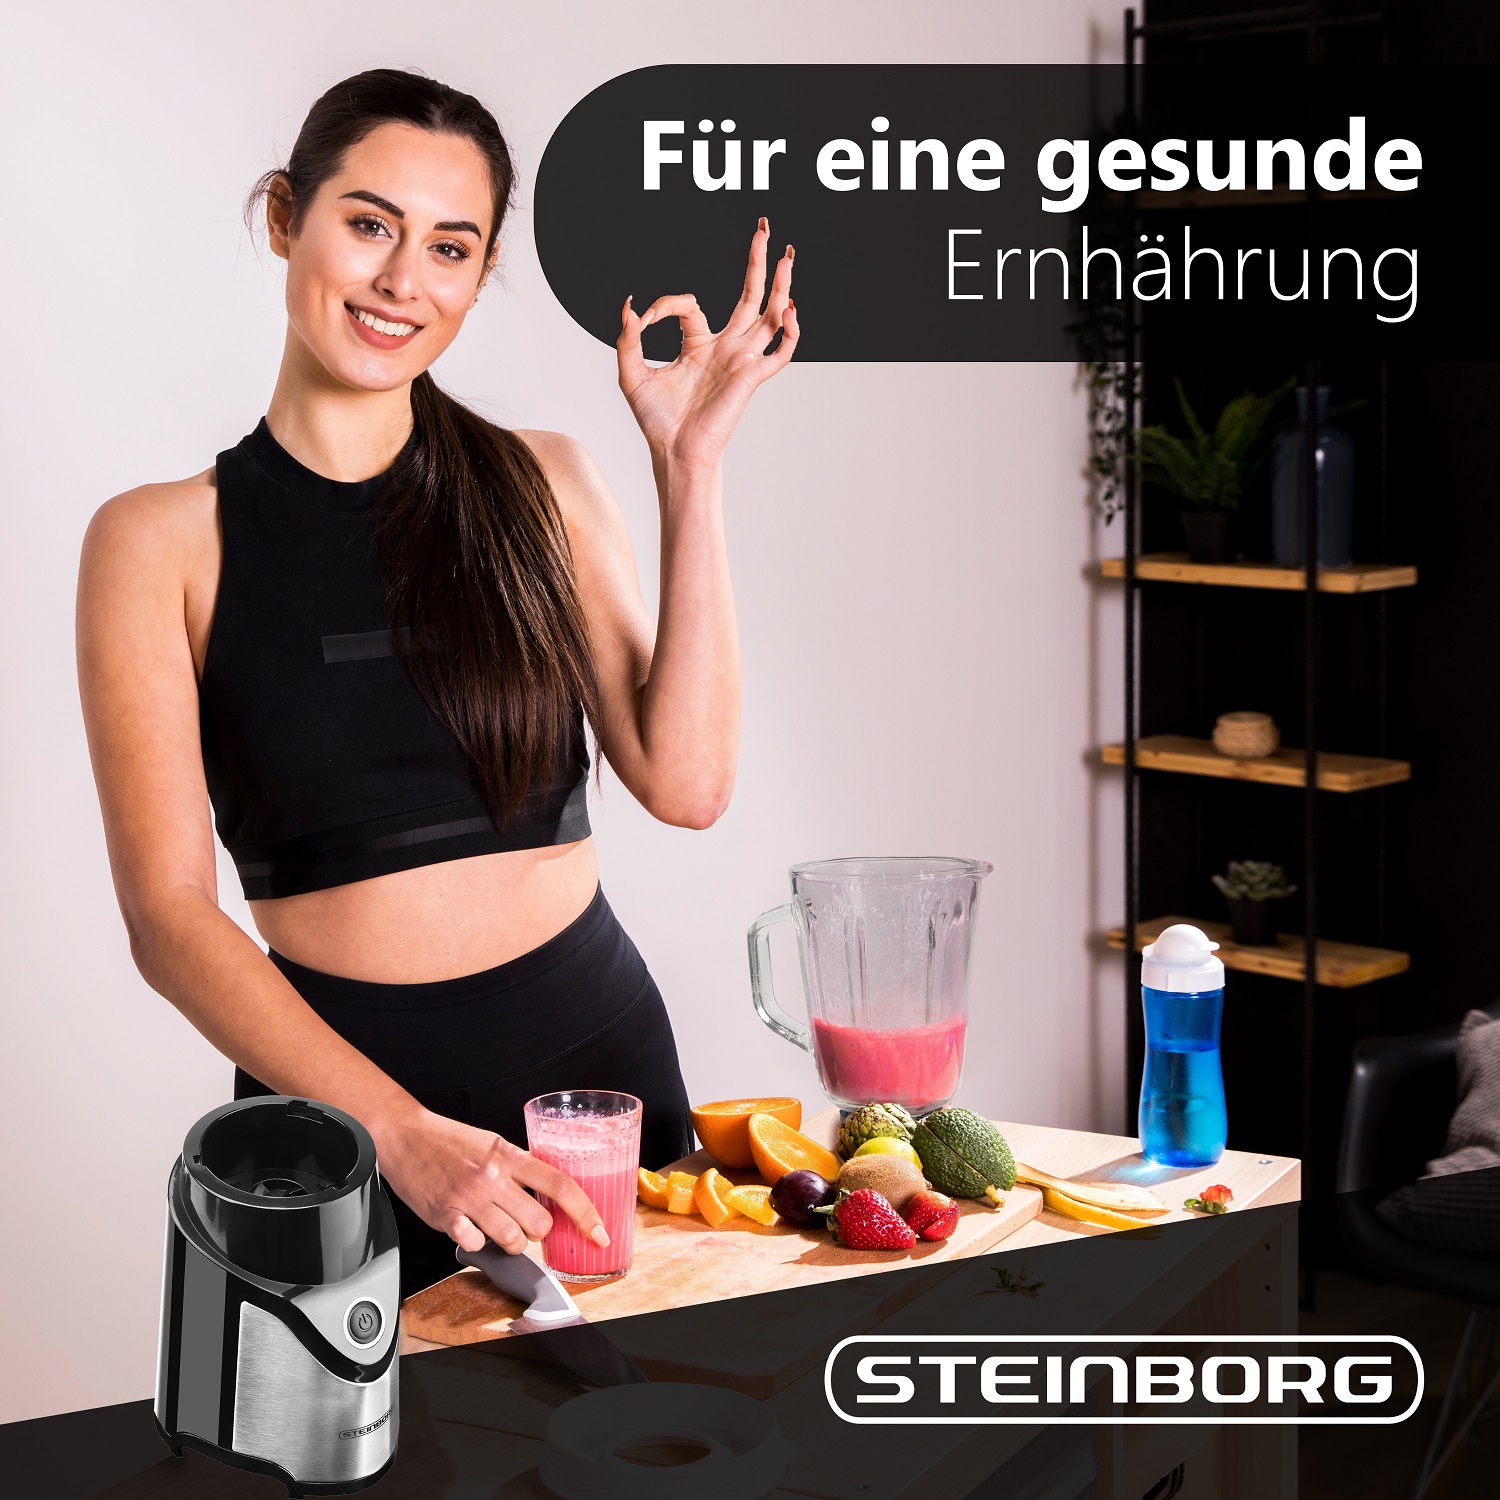 Steinborg SB-7030 Standmixer